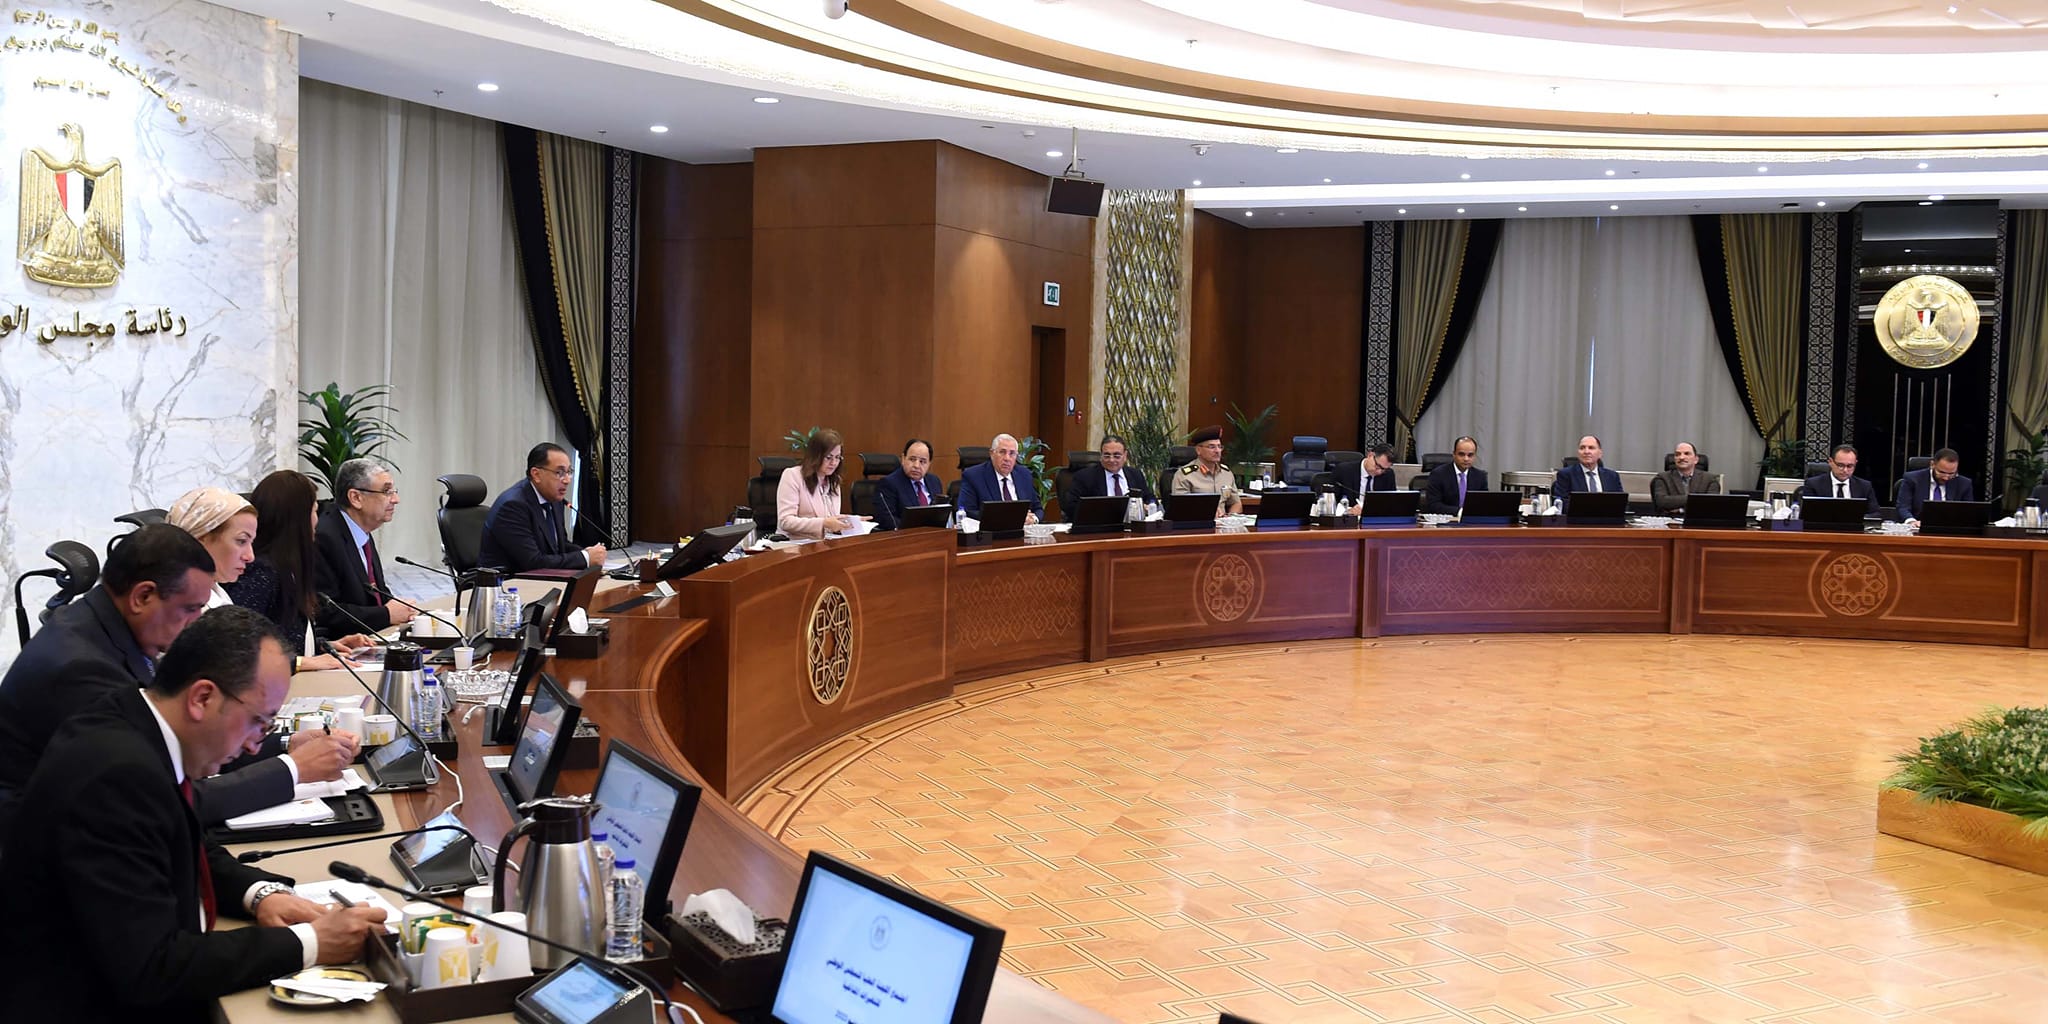 اجتماع اللجنة العليا للمجلس الوطني للتغيرات المناخية برئاسة رئيس الوزراء مصطفى مدبولي